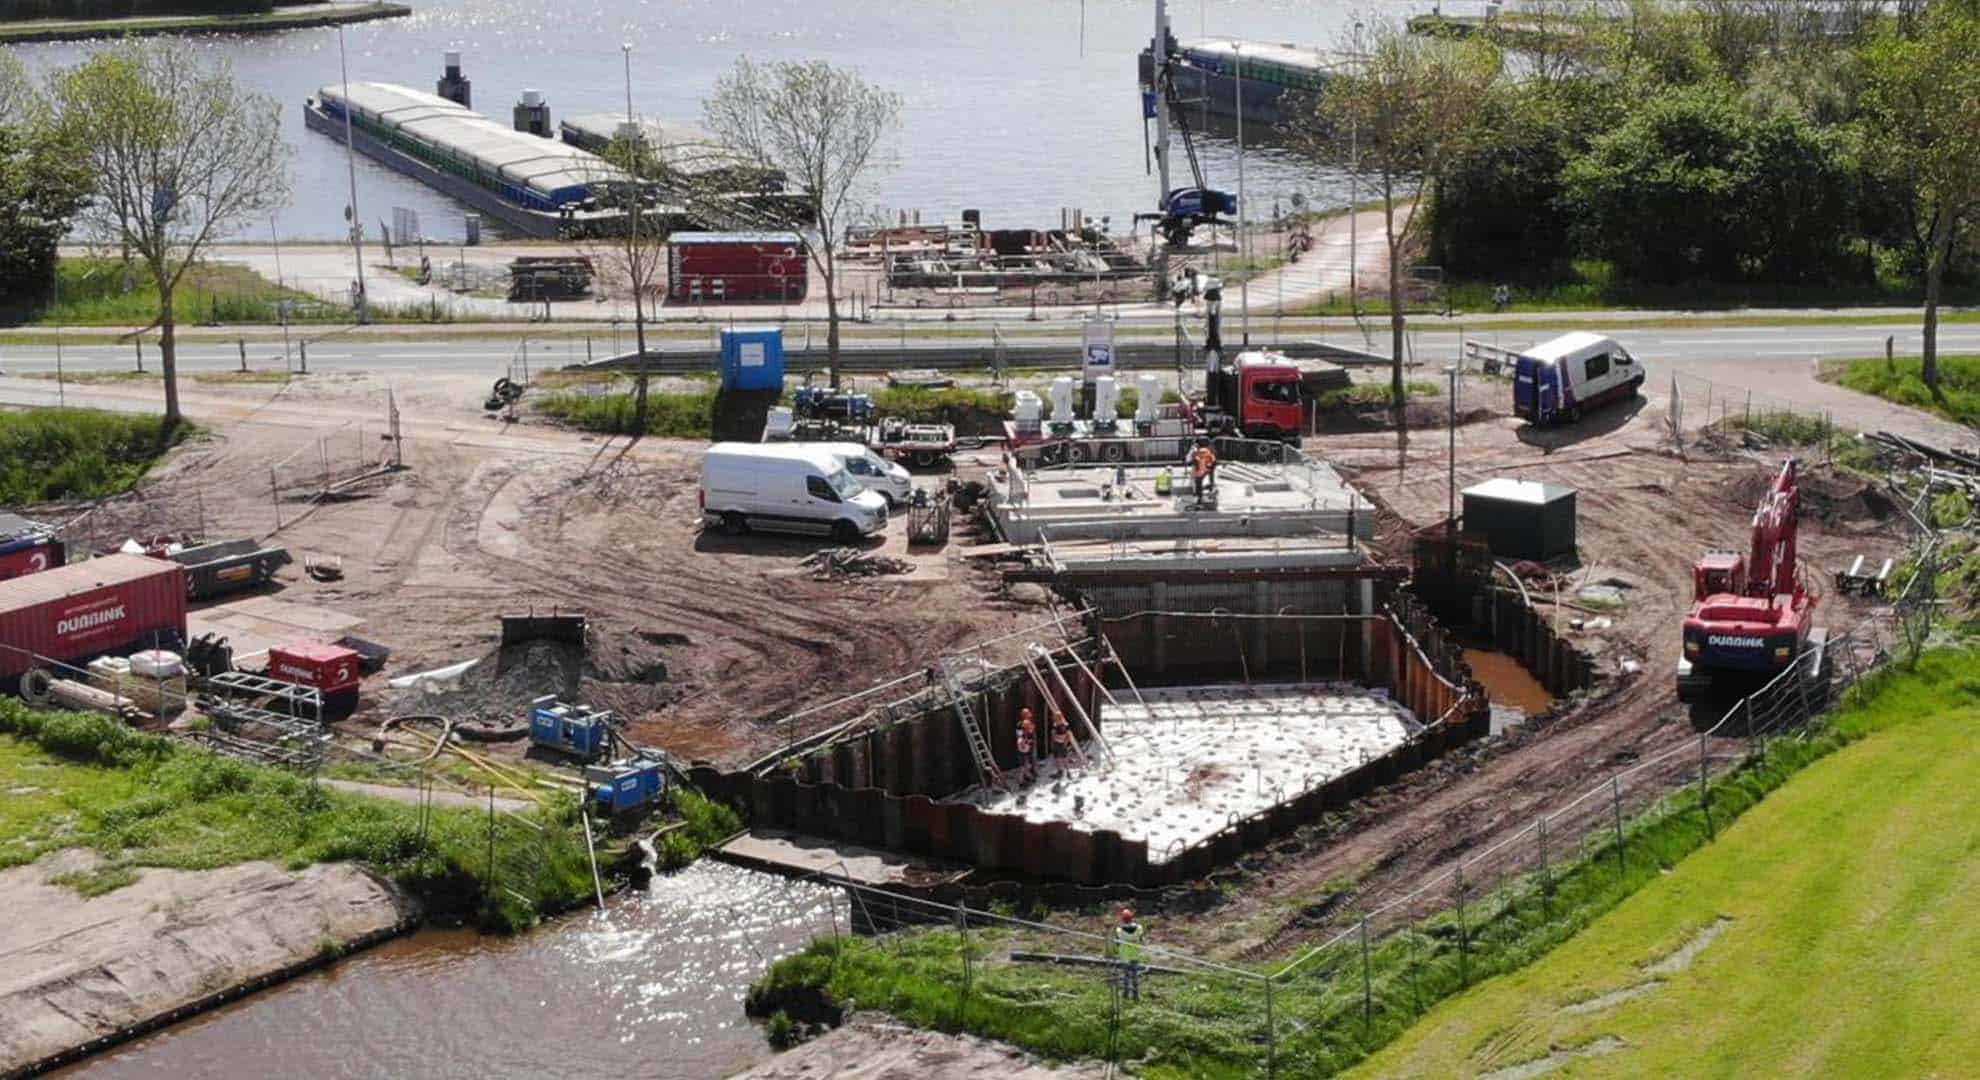 De bouwlocatie van het nieuwe gemaal Leenders in Wannepeveen is open tijdens de Dag van de Bouw op 18 juni, van 10.00 tot 14.00 uur. Foto: WDODelta